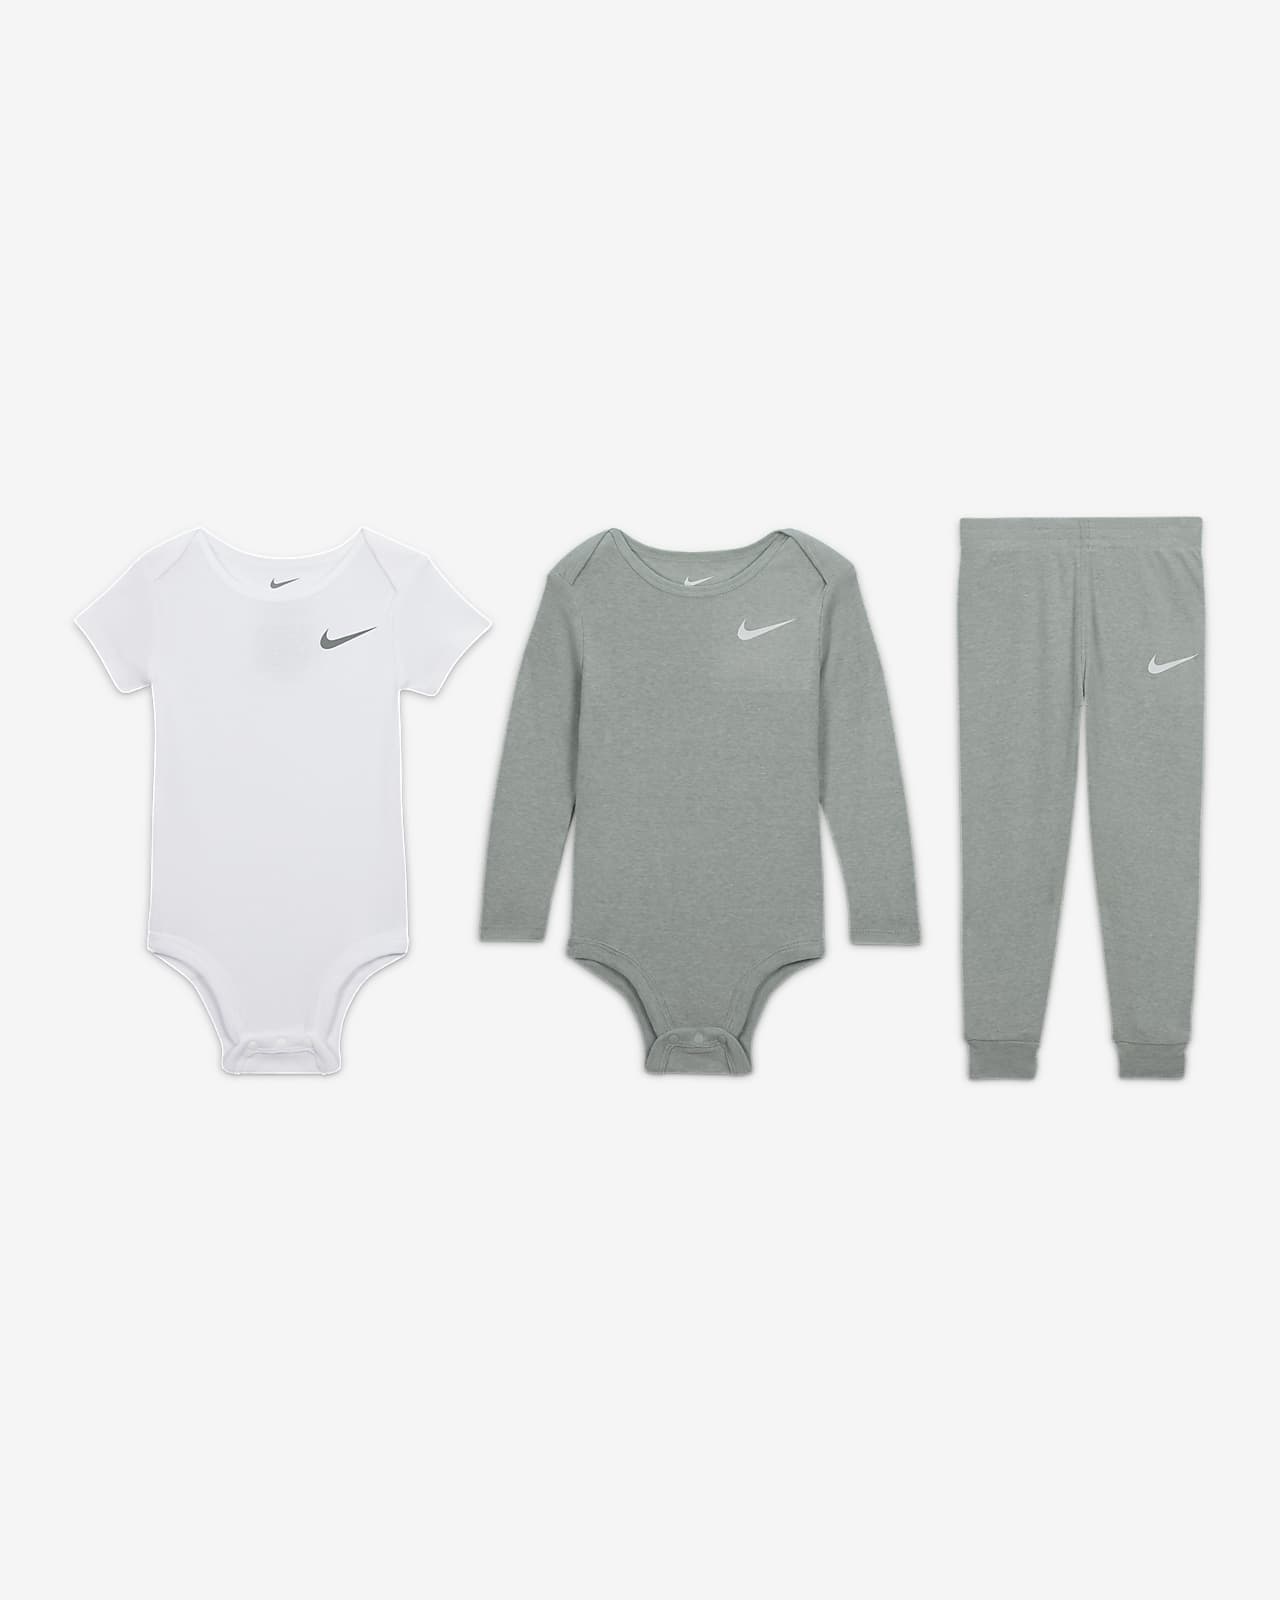 Nike Essentials 3-Piece Pants Set Baby 3-Piece Set.